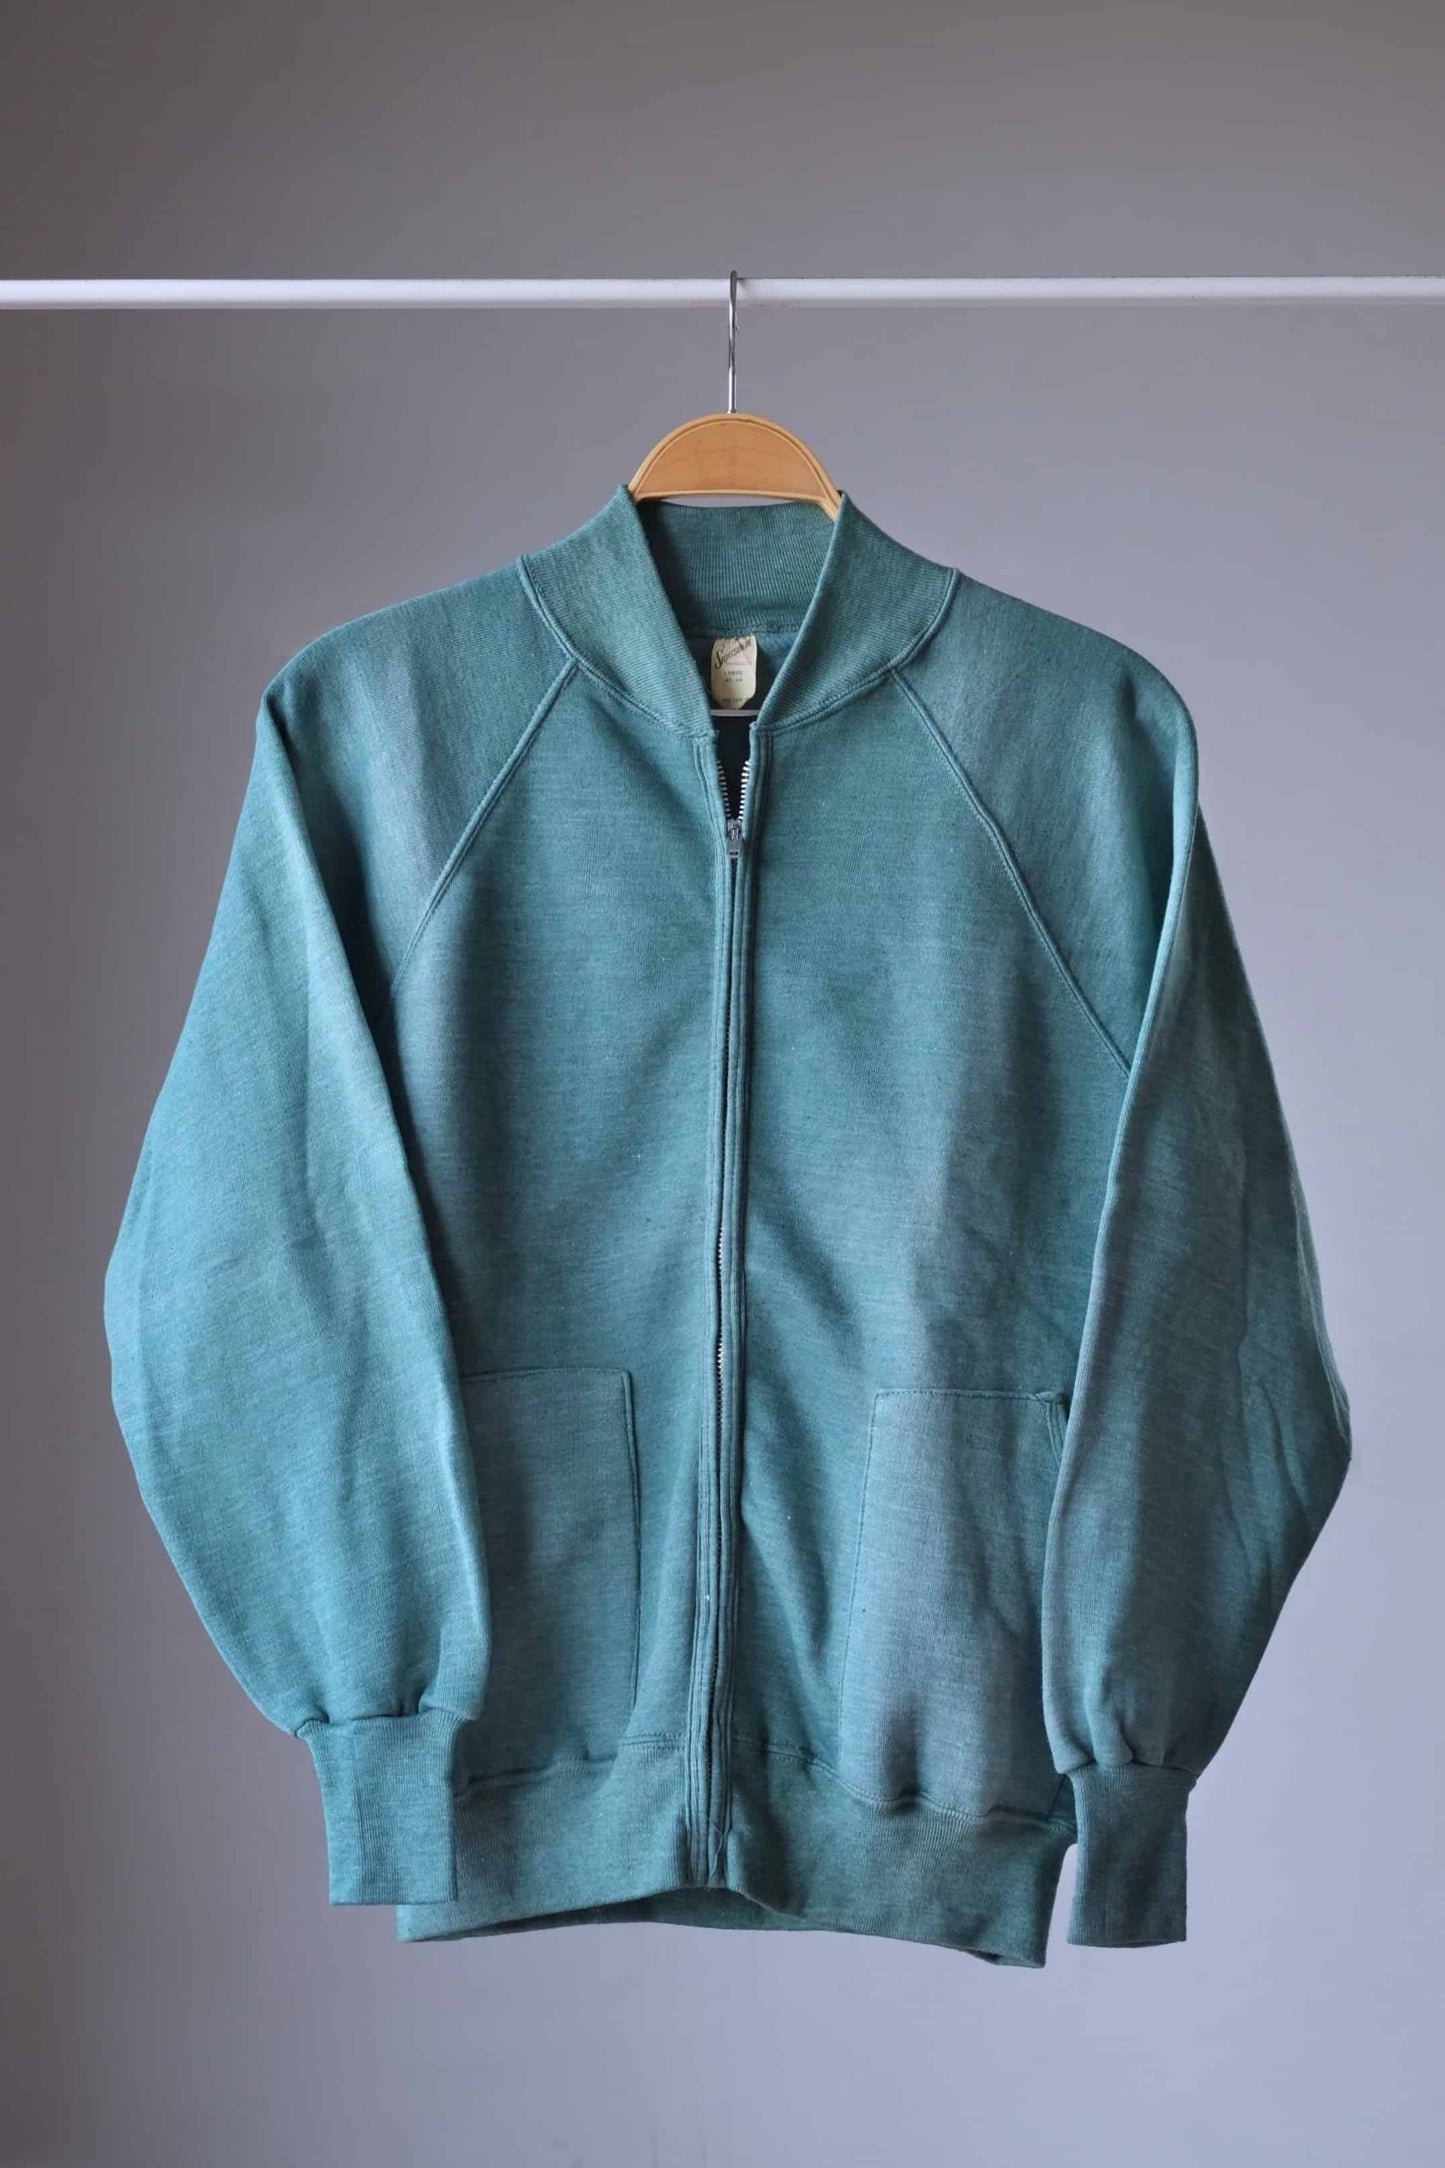 Heether green zipper sweatshirt on hanger